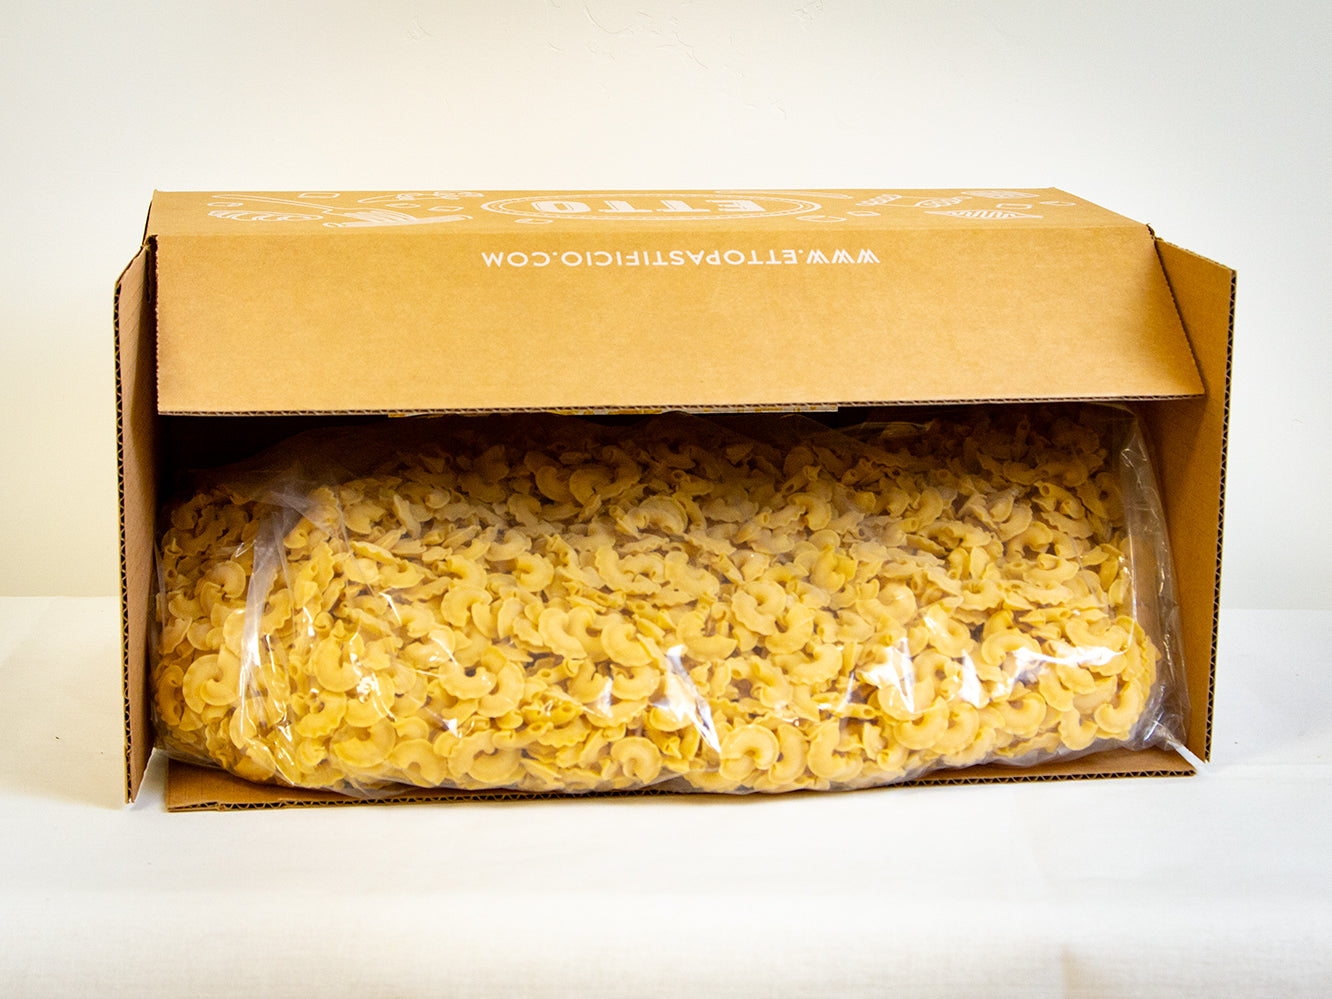 Cresti di Gallo shape pasta in a 15lb. box